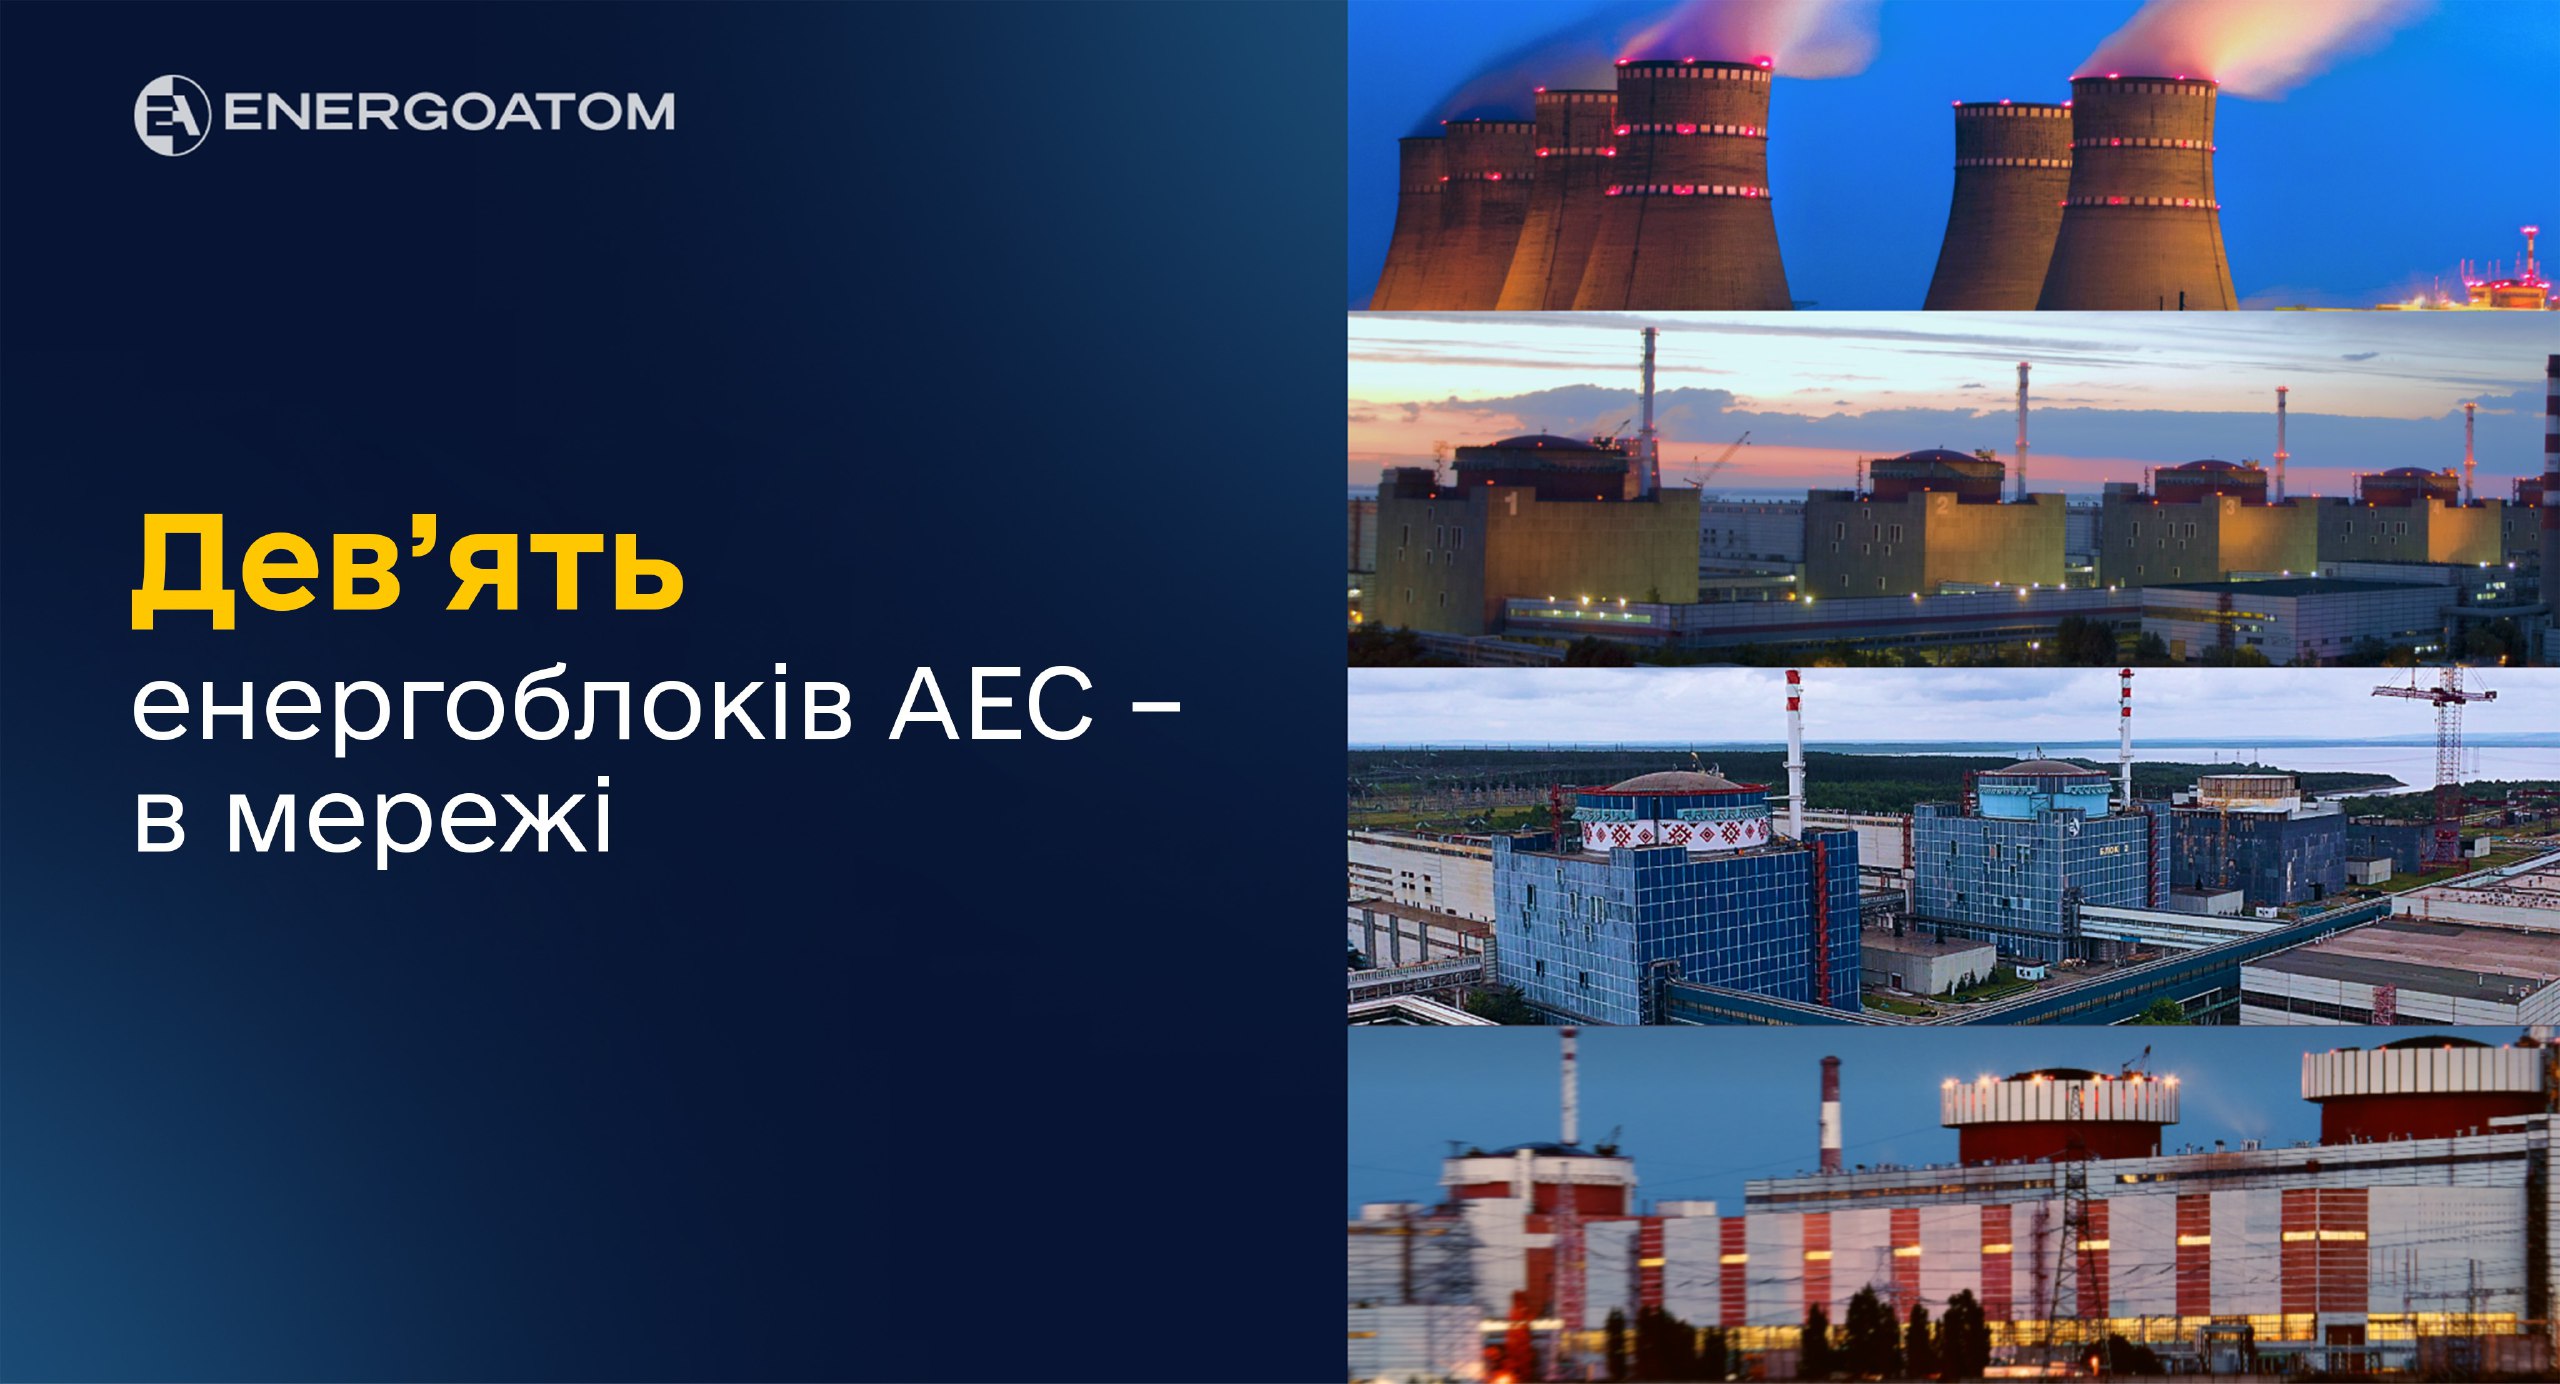 ⚡️⚡️⚡️ Герман Галущенко: відтепер усі дев’ять атомних блоків на українських АЕС під’єднані до енергосистеми та виробляють електроенергію 